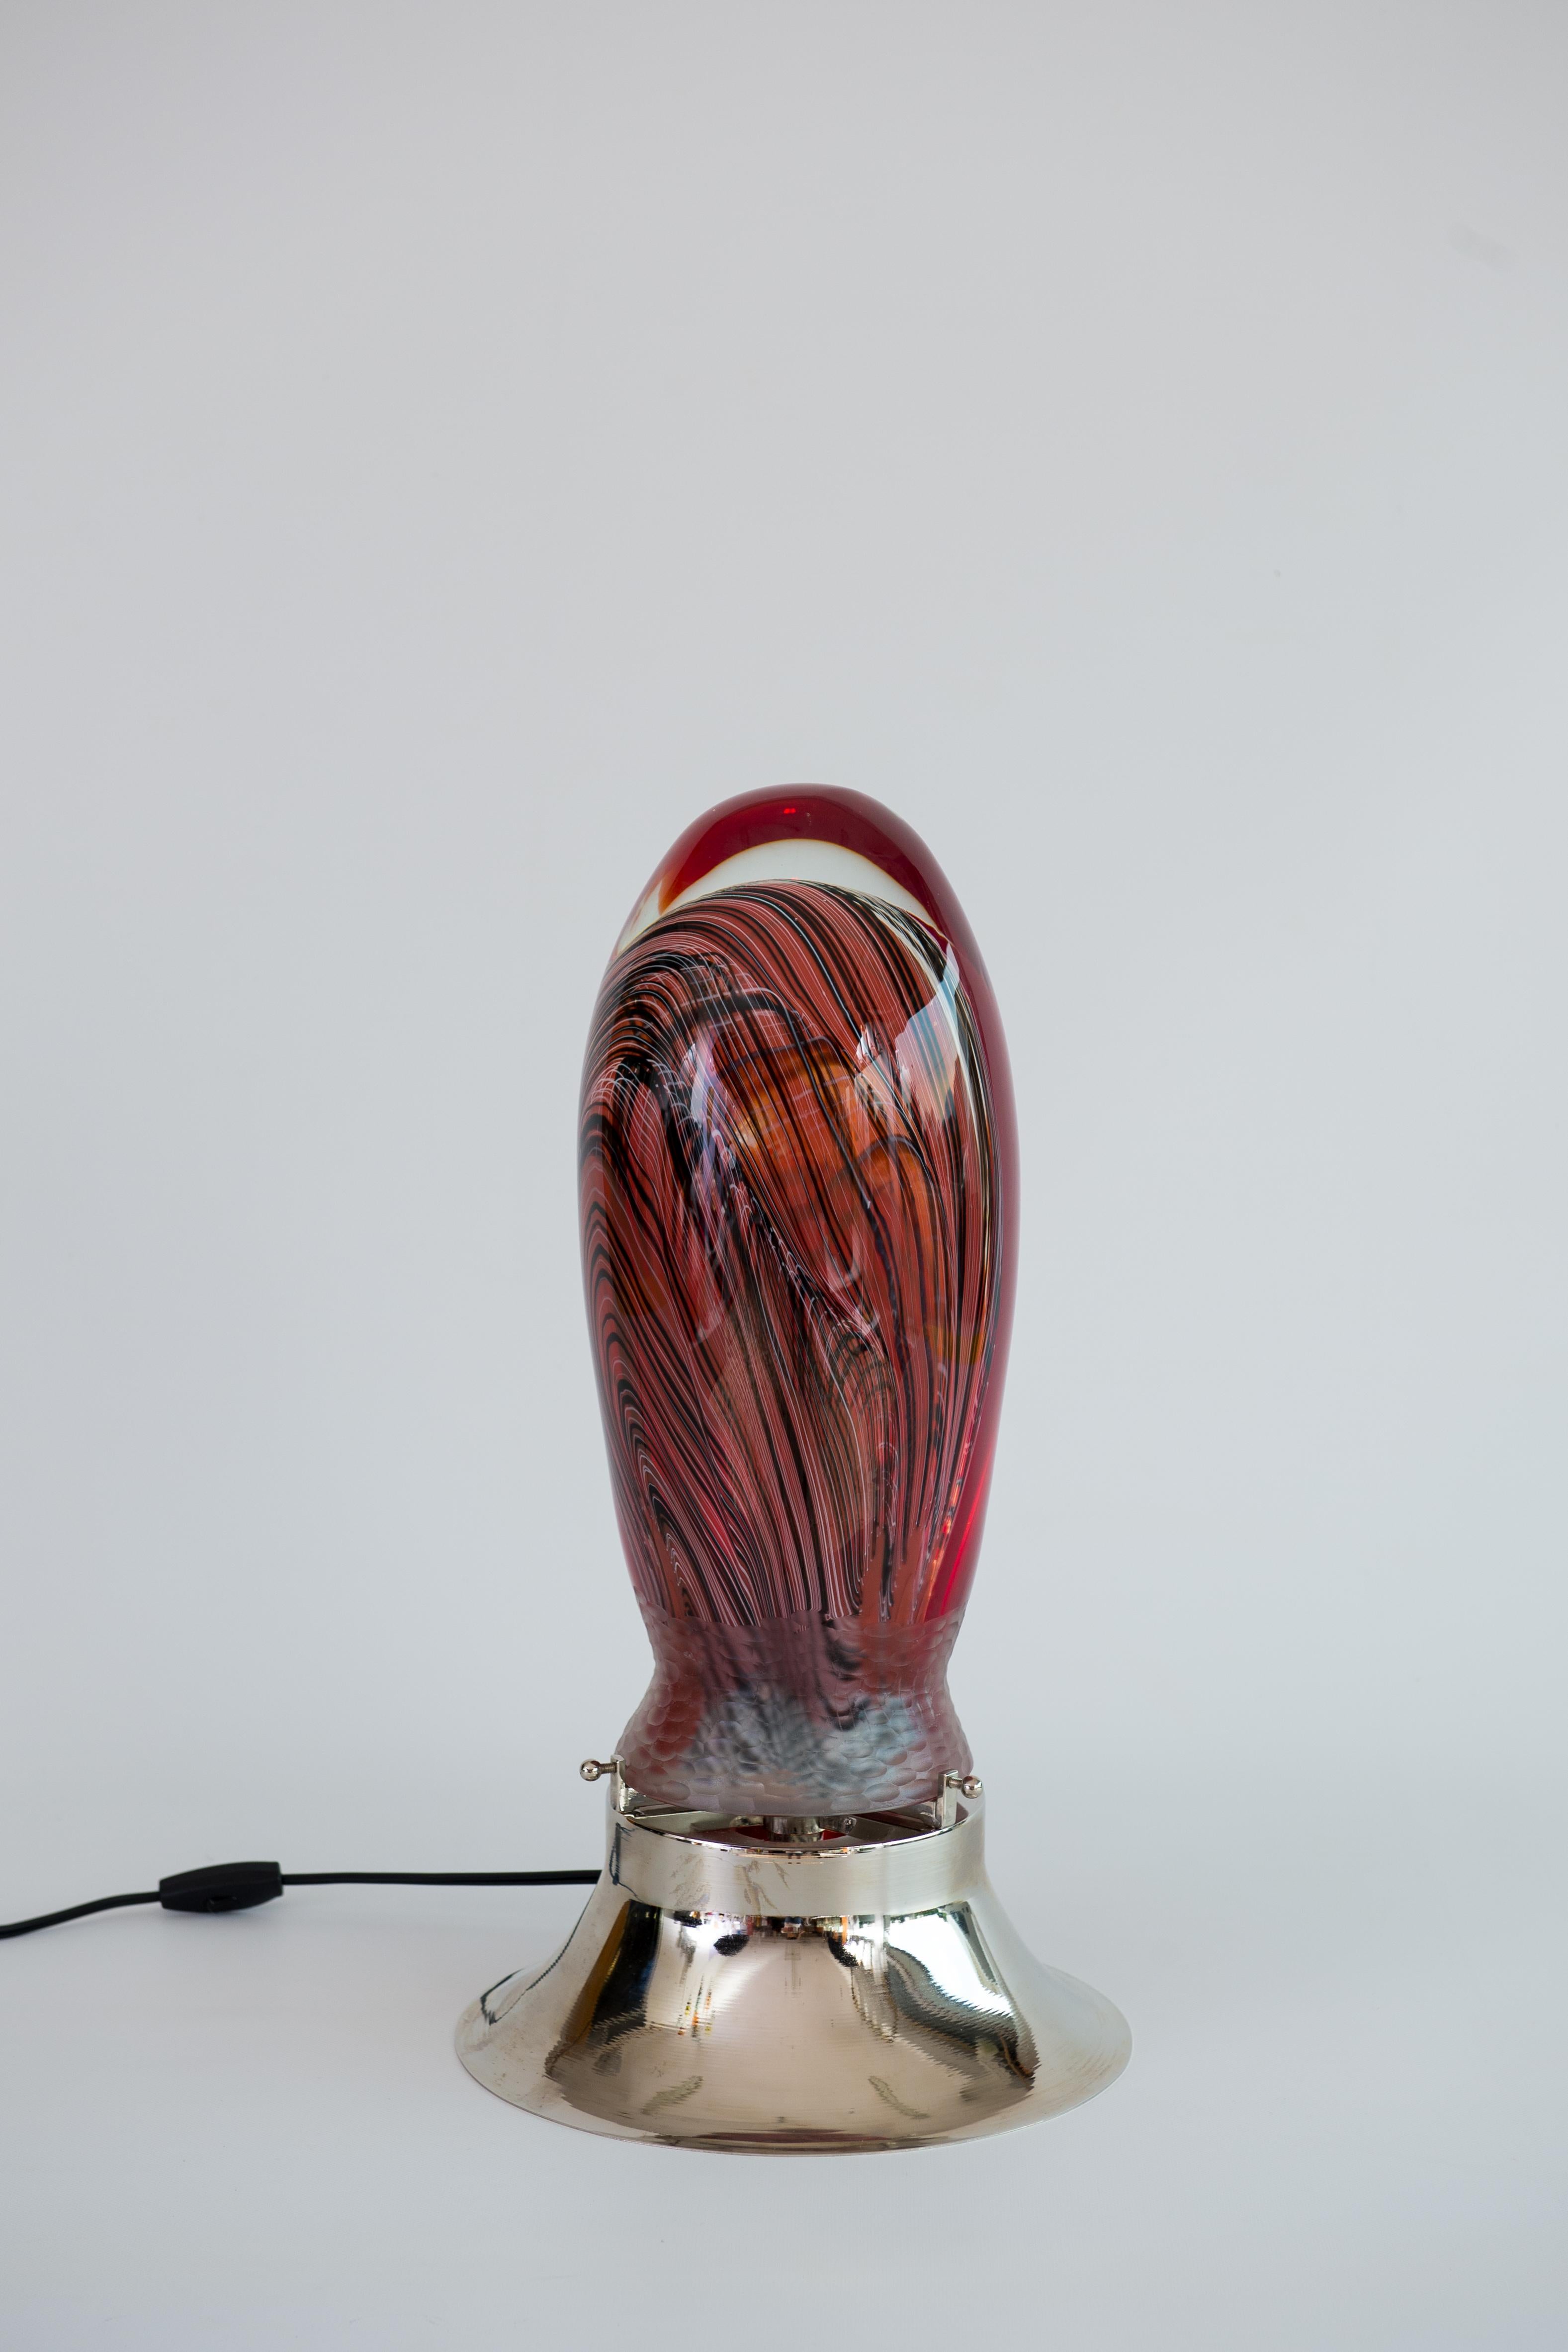 Lampe de table abstraite vénitienne en verre soufflé de Murano avec des filigranes immergés, années 1990.
Cette œuvre d'art fantastique est une belle sculpture en verre, mais c'est aussi beaucoup plus, grâce à une lumière brillante à l'intérieur